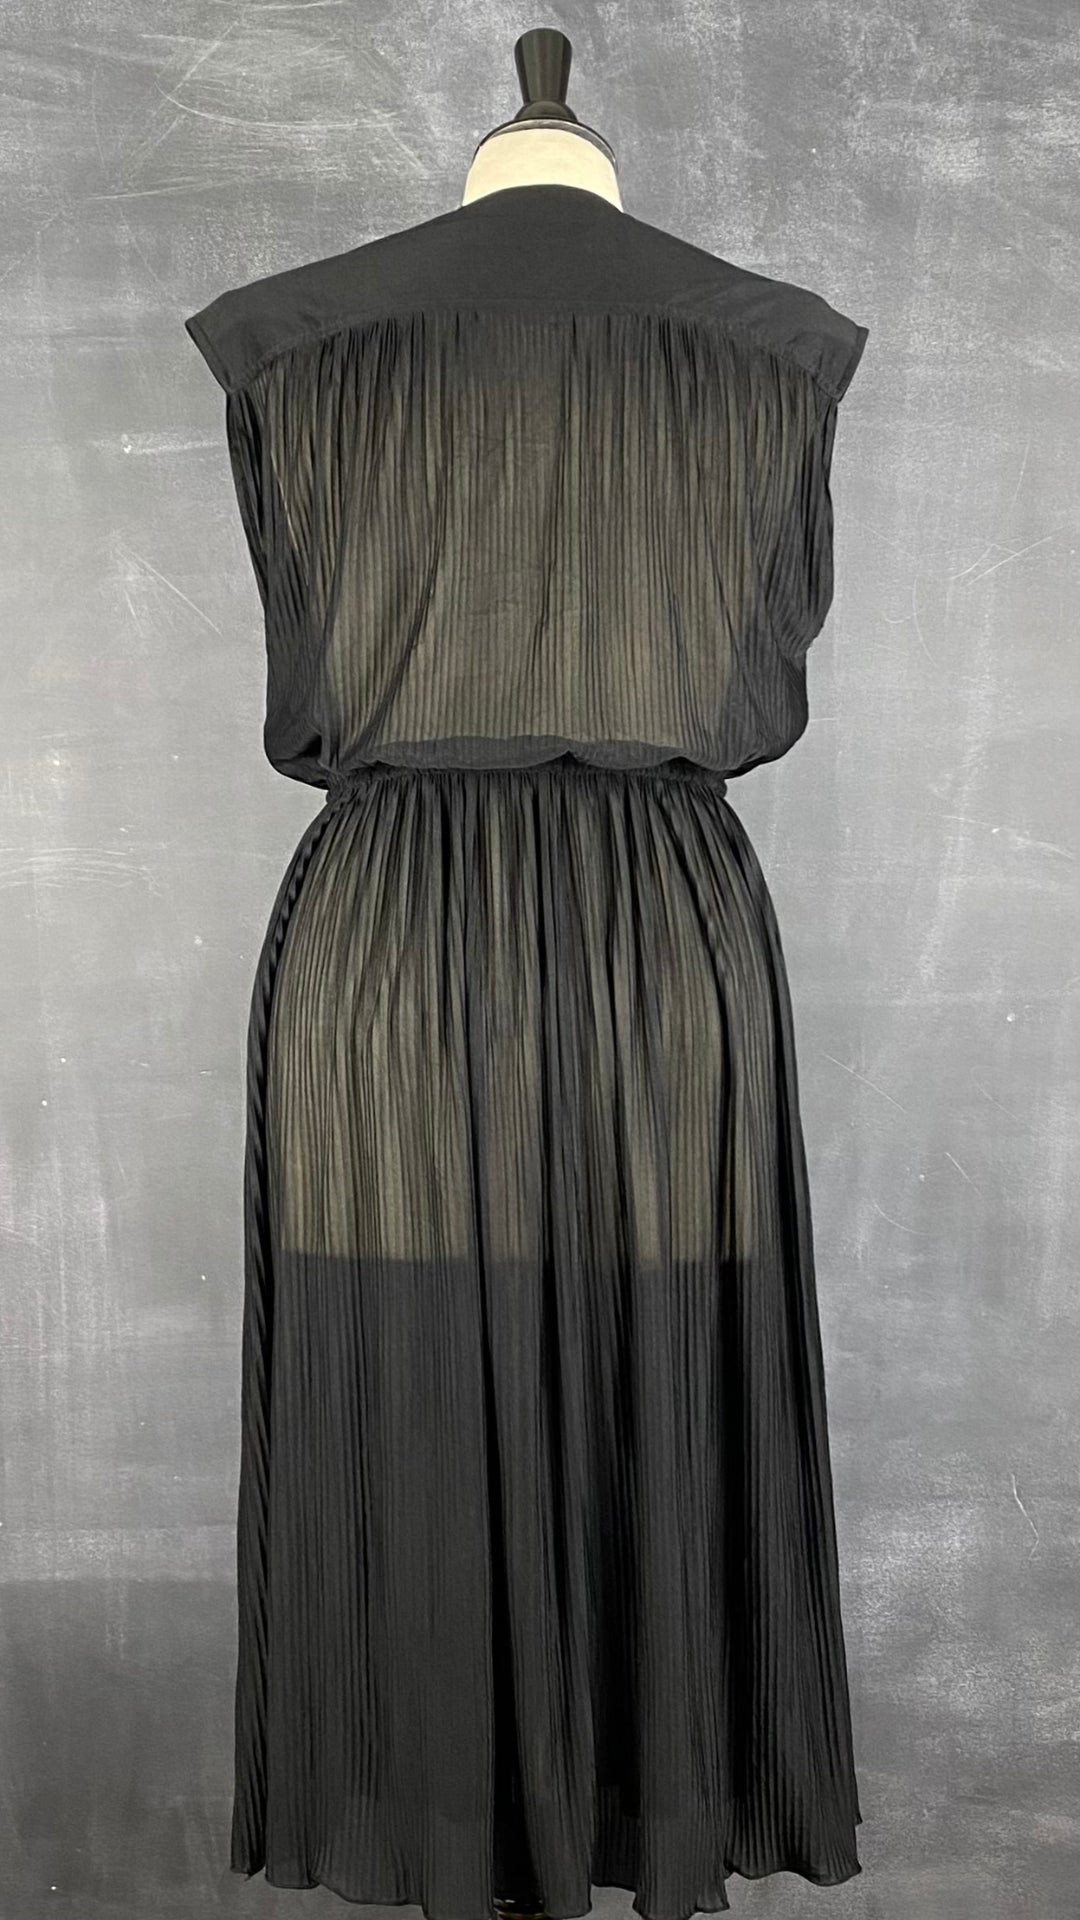 Robe plissée noire vintage, taille xs/s. Vue de dos.